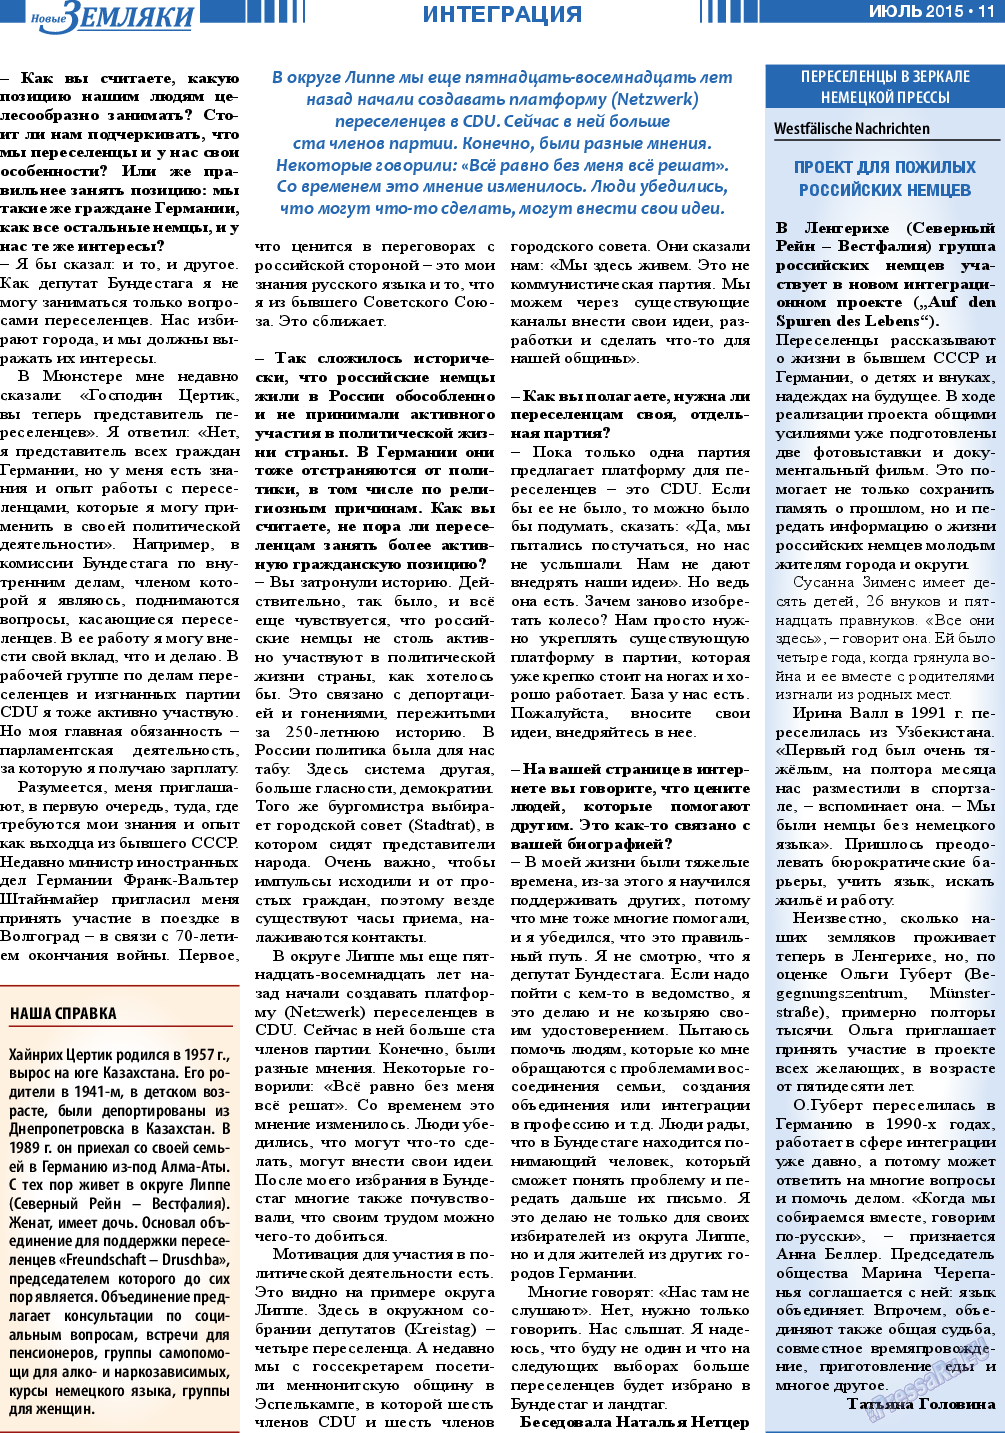 Новые Земляки, газета. 2015 №7 стр.11